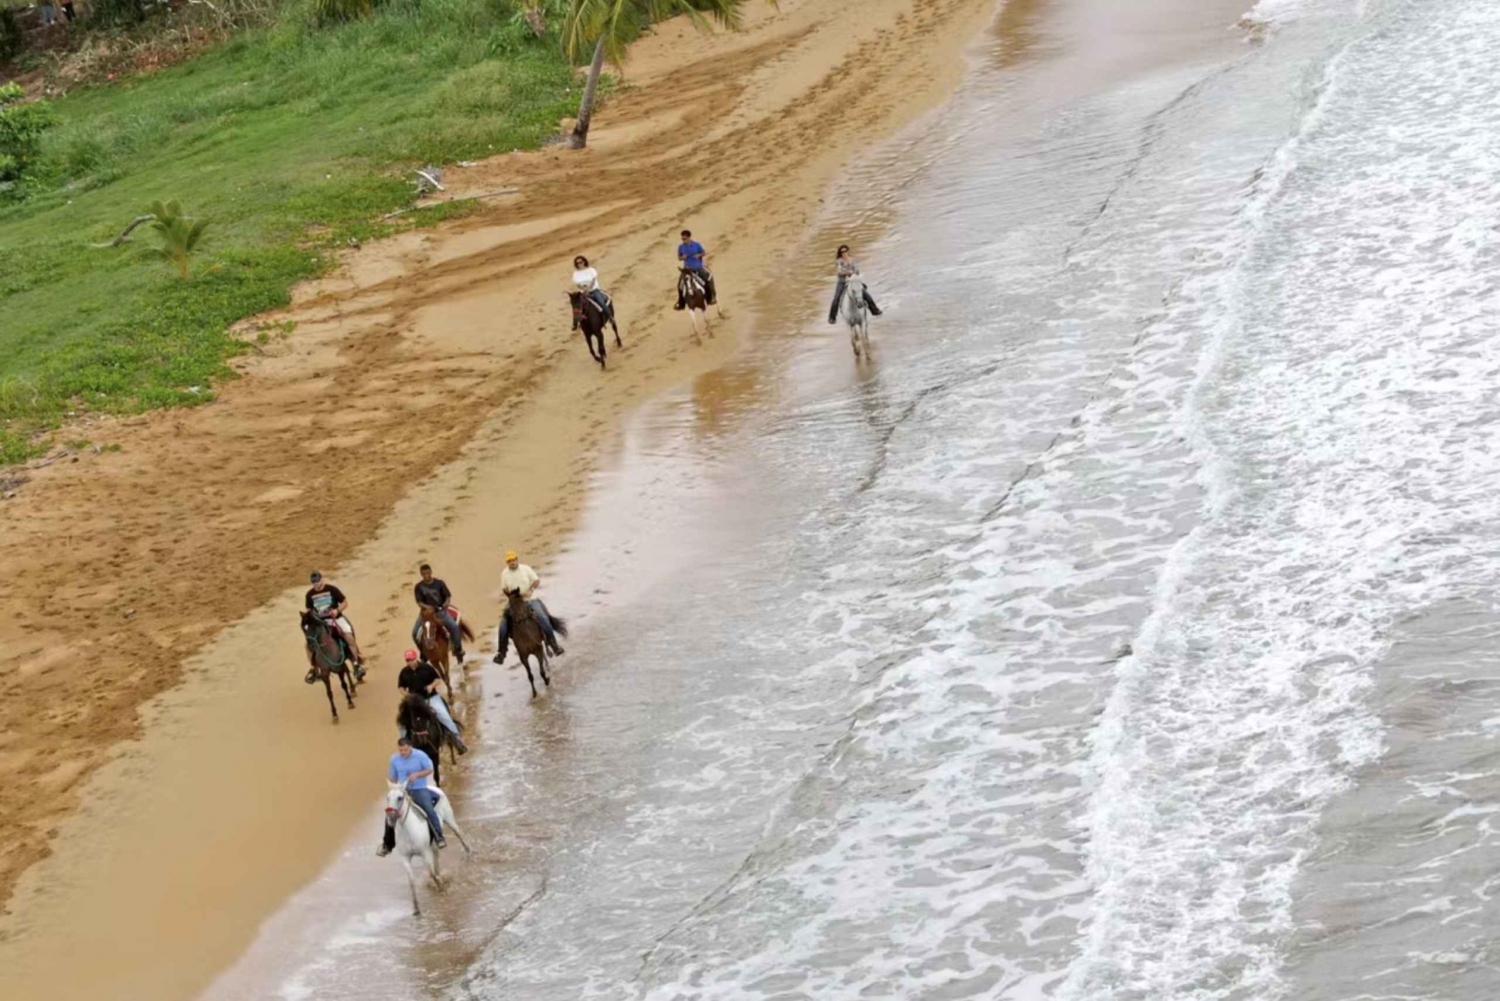 Carabalí Rainforest Park: Beach Horseback Riding